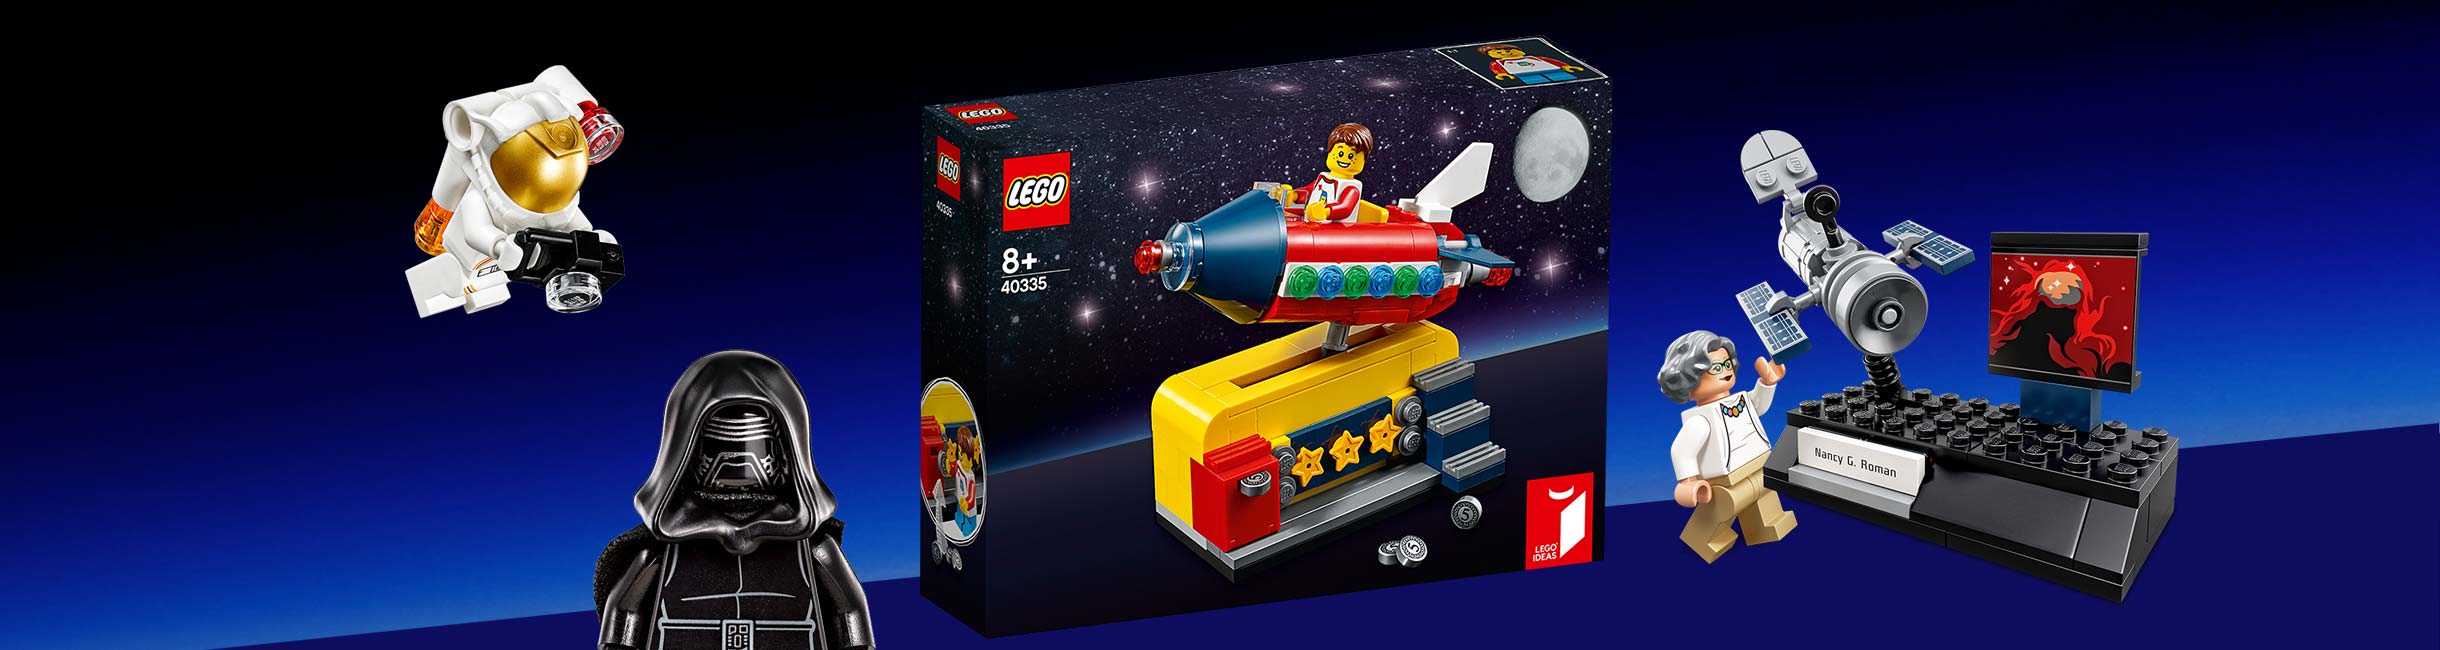 Рекламная акция Лего (LEGO) «Эксклюзивная ракета-качалка в подарок!»